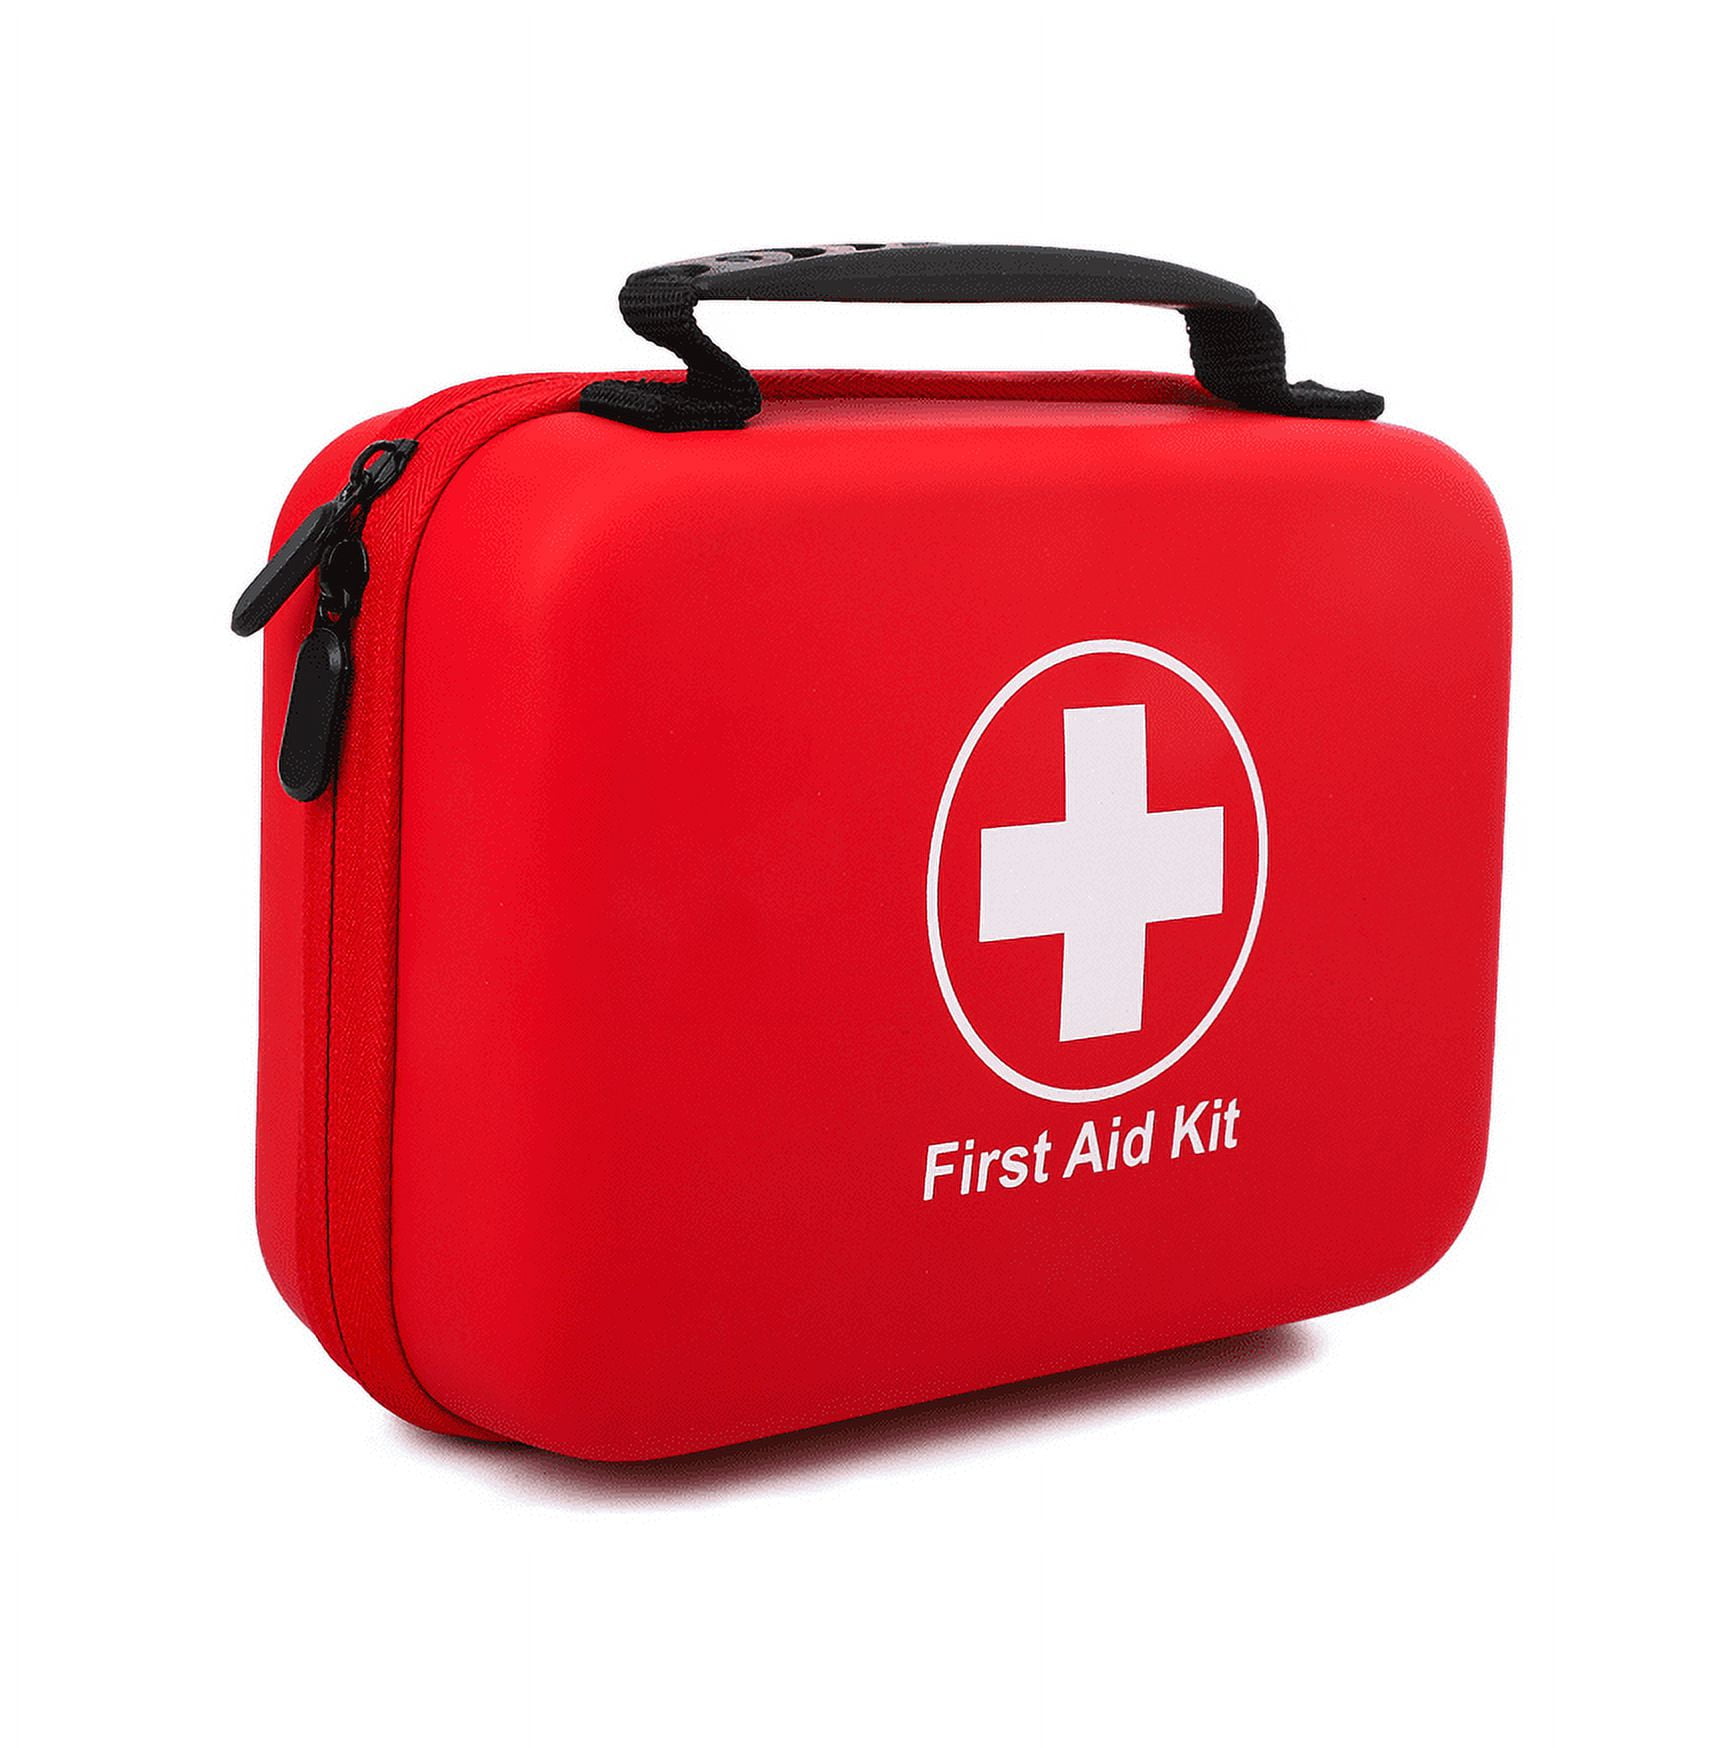 Emergency health kits